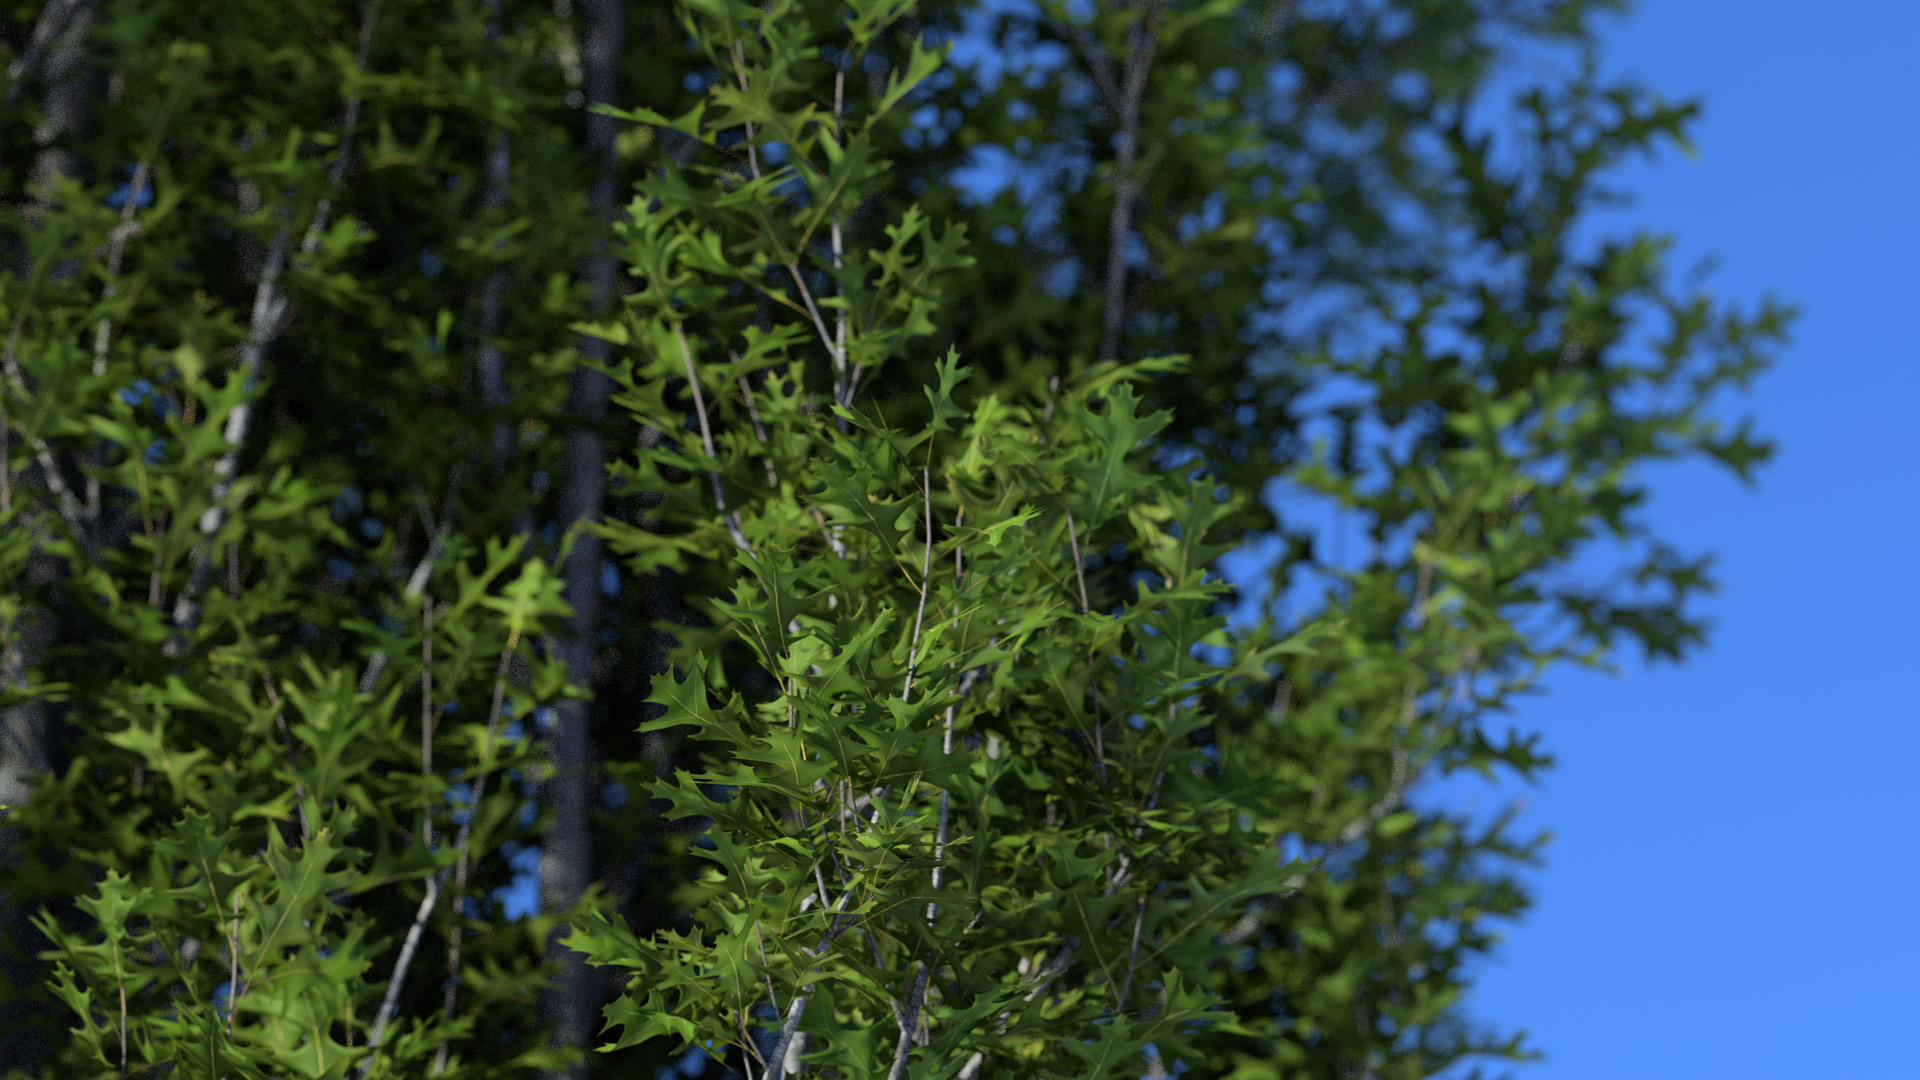 3D model of the Columnar swamp oak Quercus palustris 'Green Pillar'